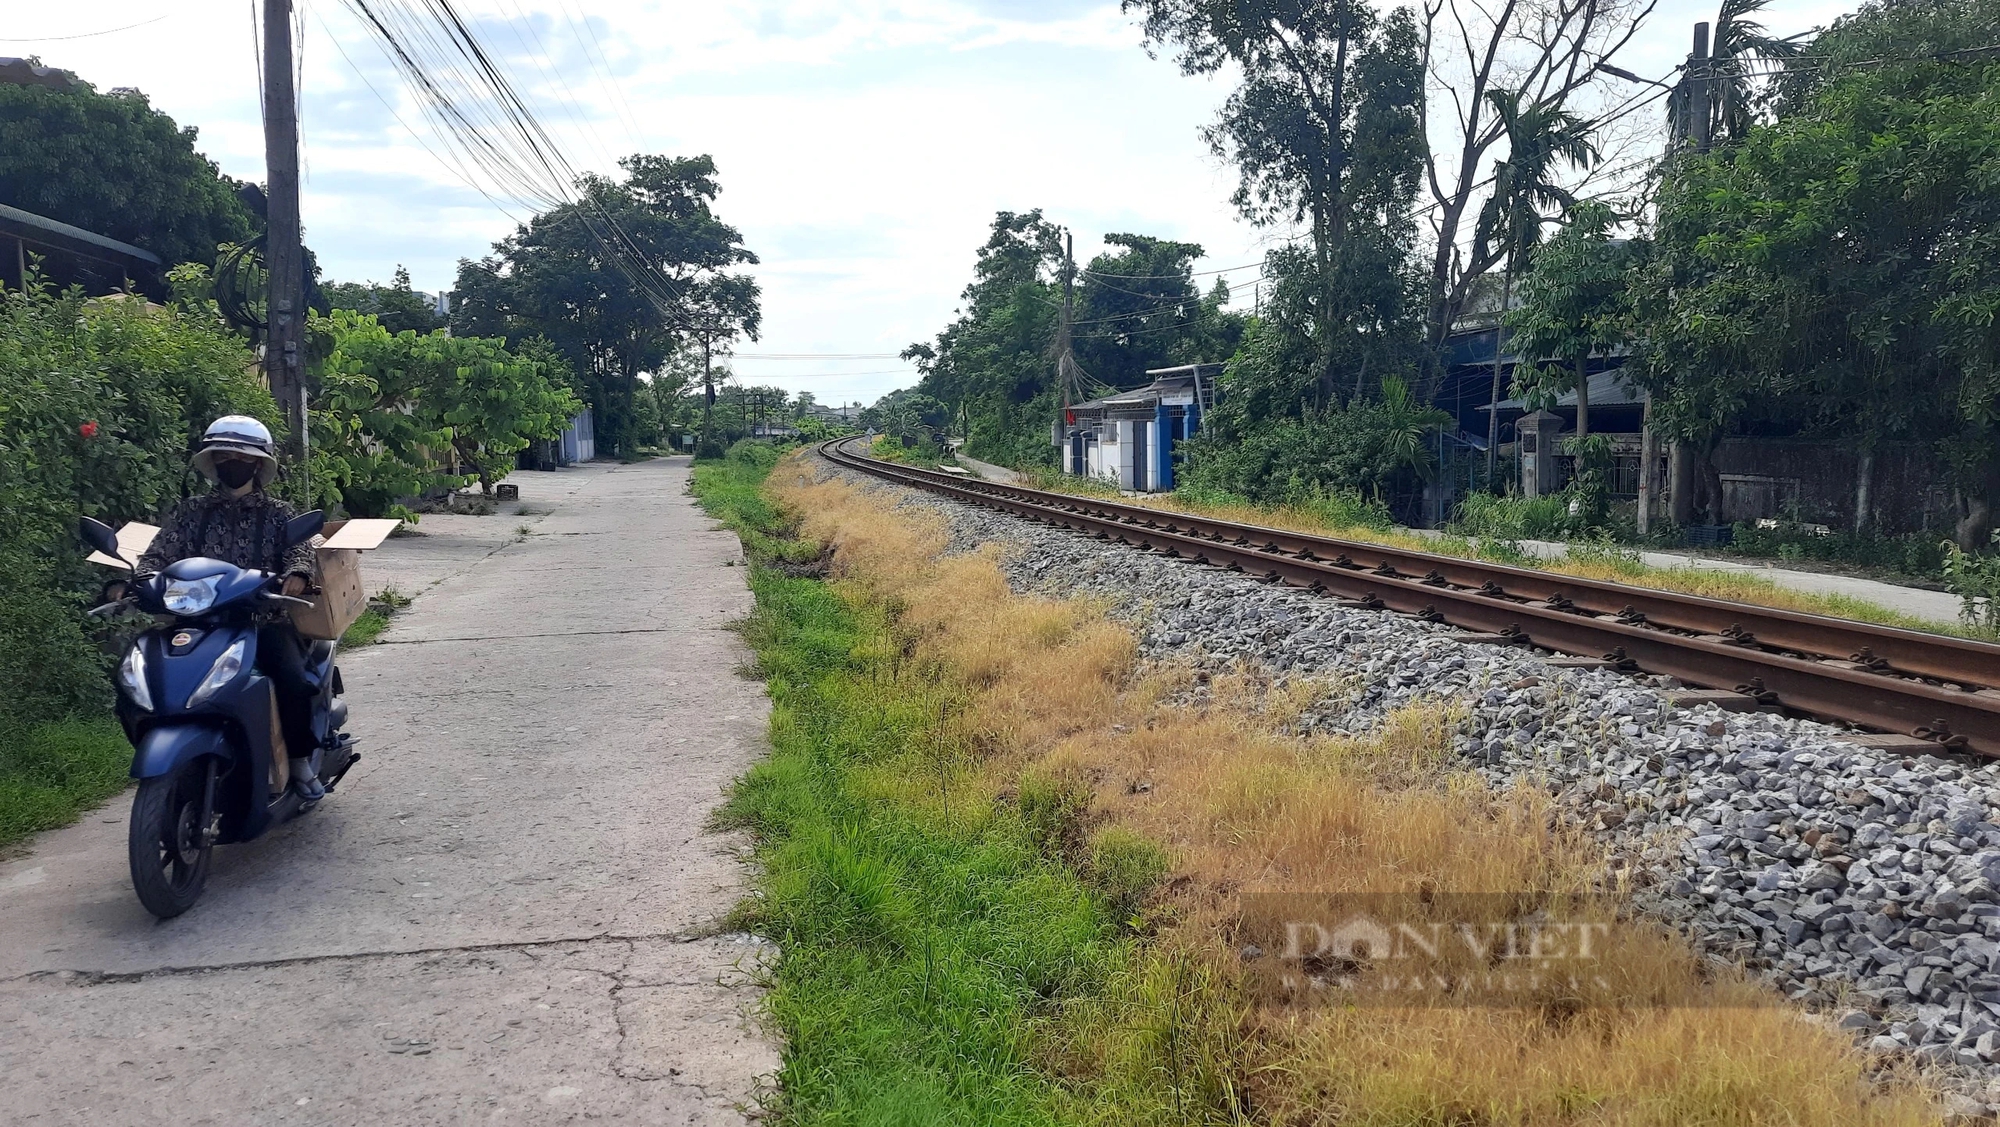 Phun thuốc trừ cỏ dọc tuyến đường sắt đi qua khu dân cư ở Quảng Trị, người dân lo lắng bất an- Ảnh 5.